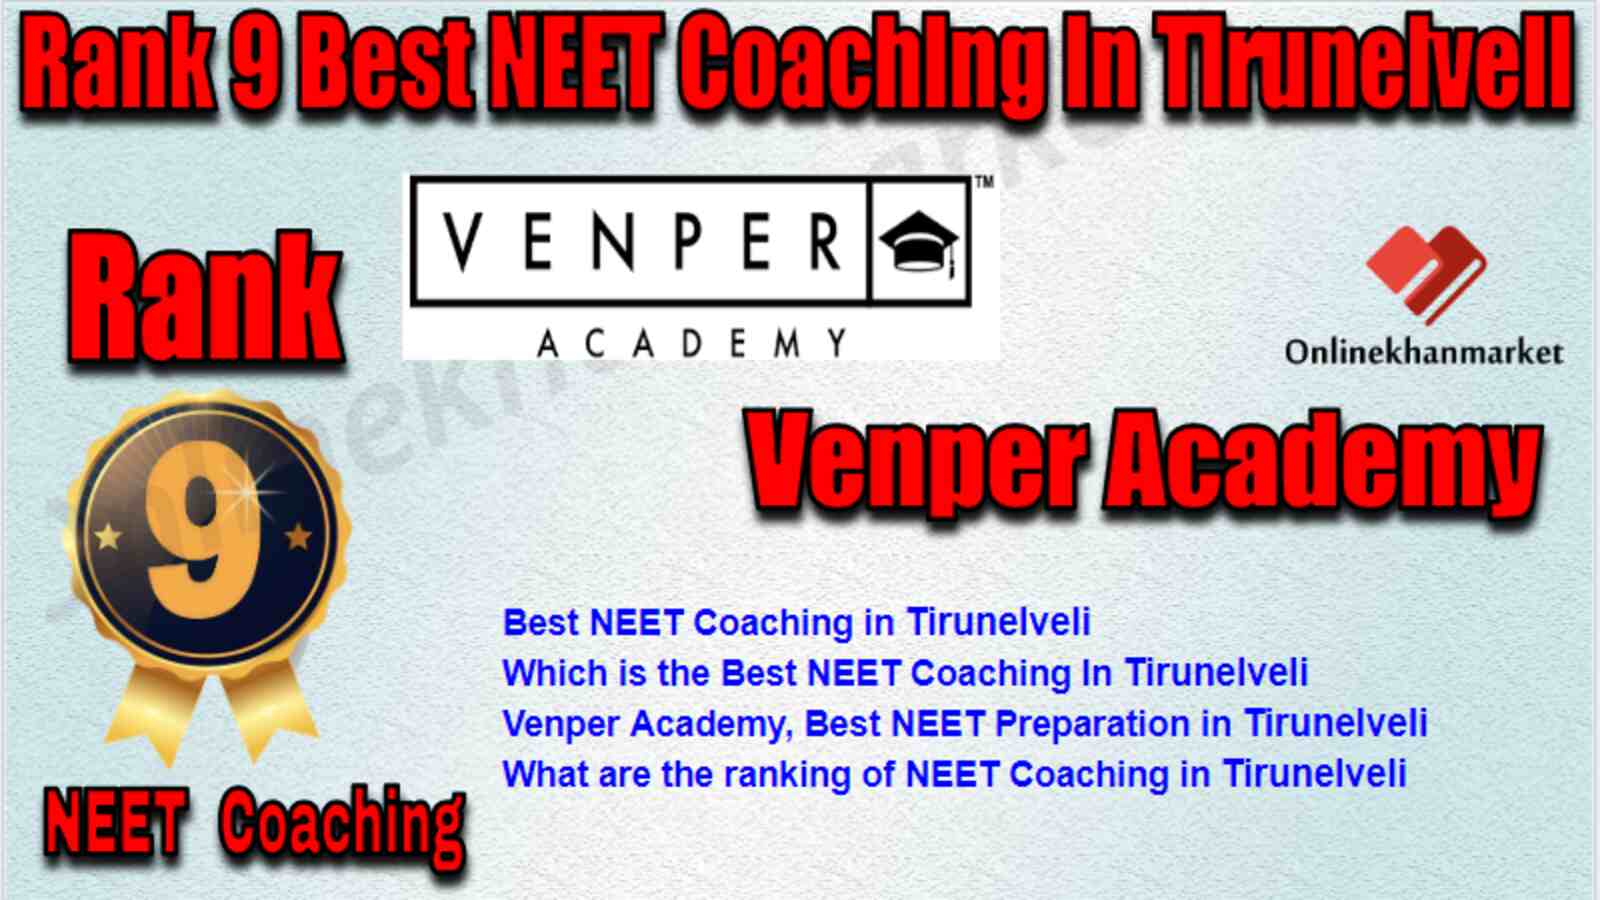 Rank 9 Best NEET Coaching in Tirunelveli